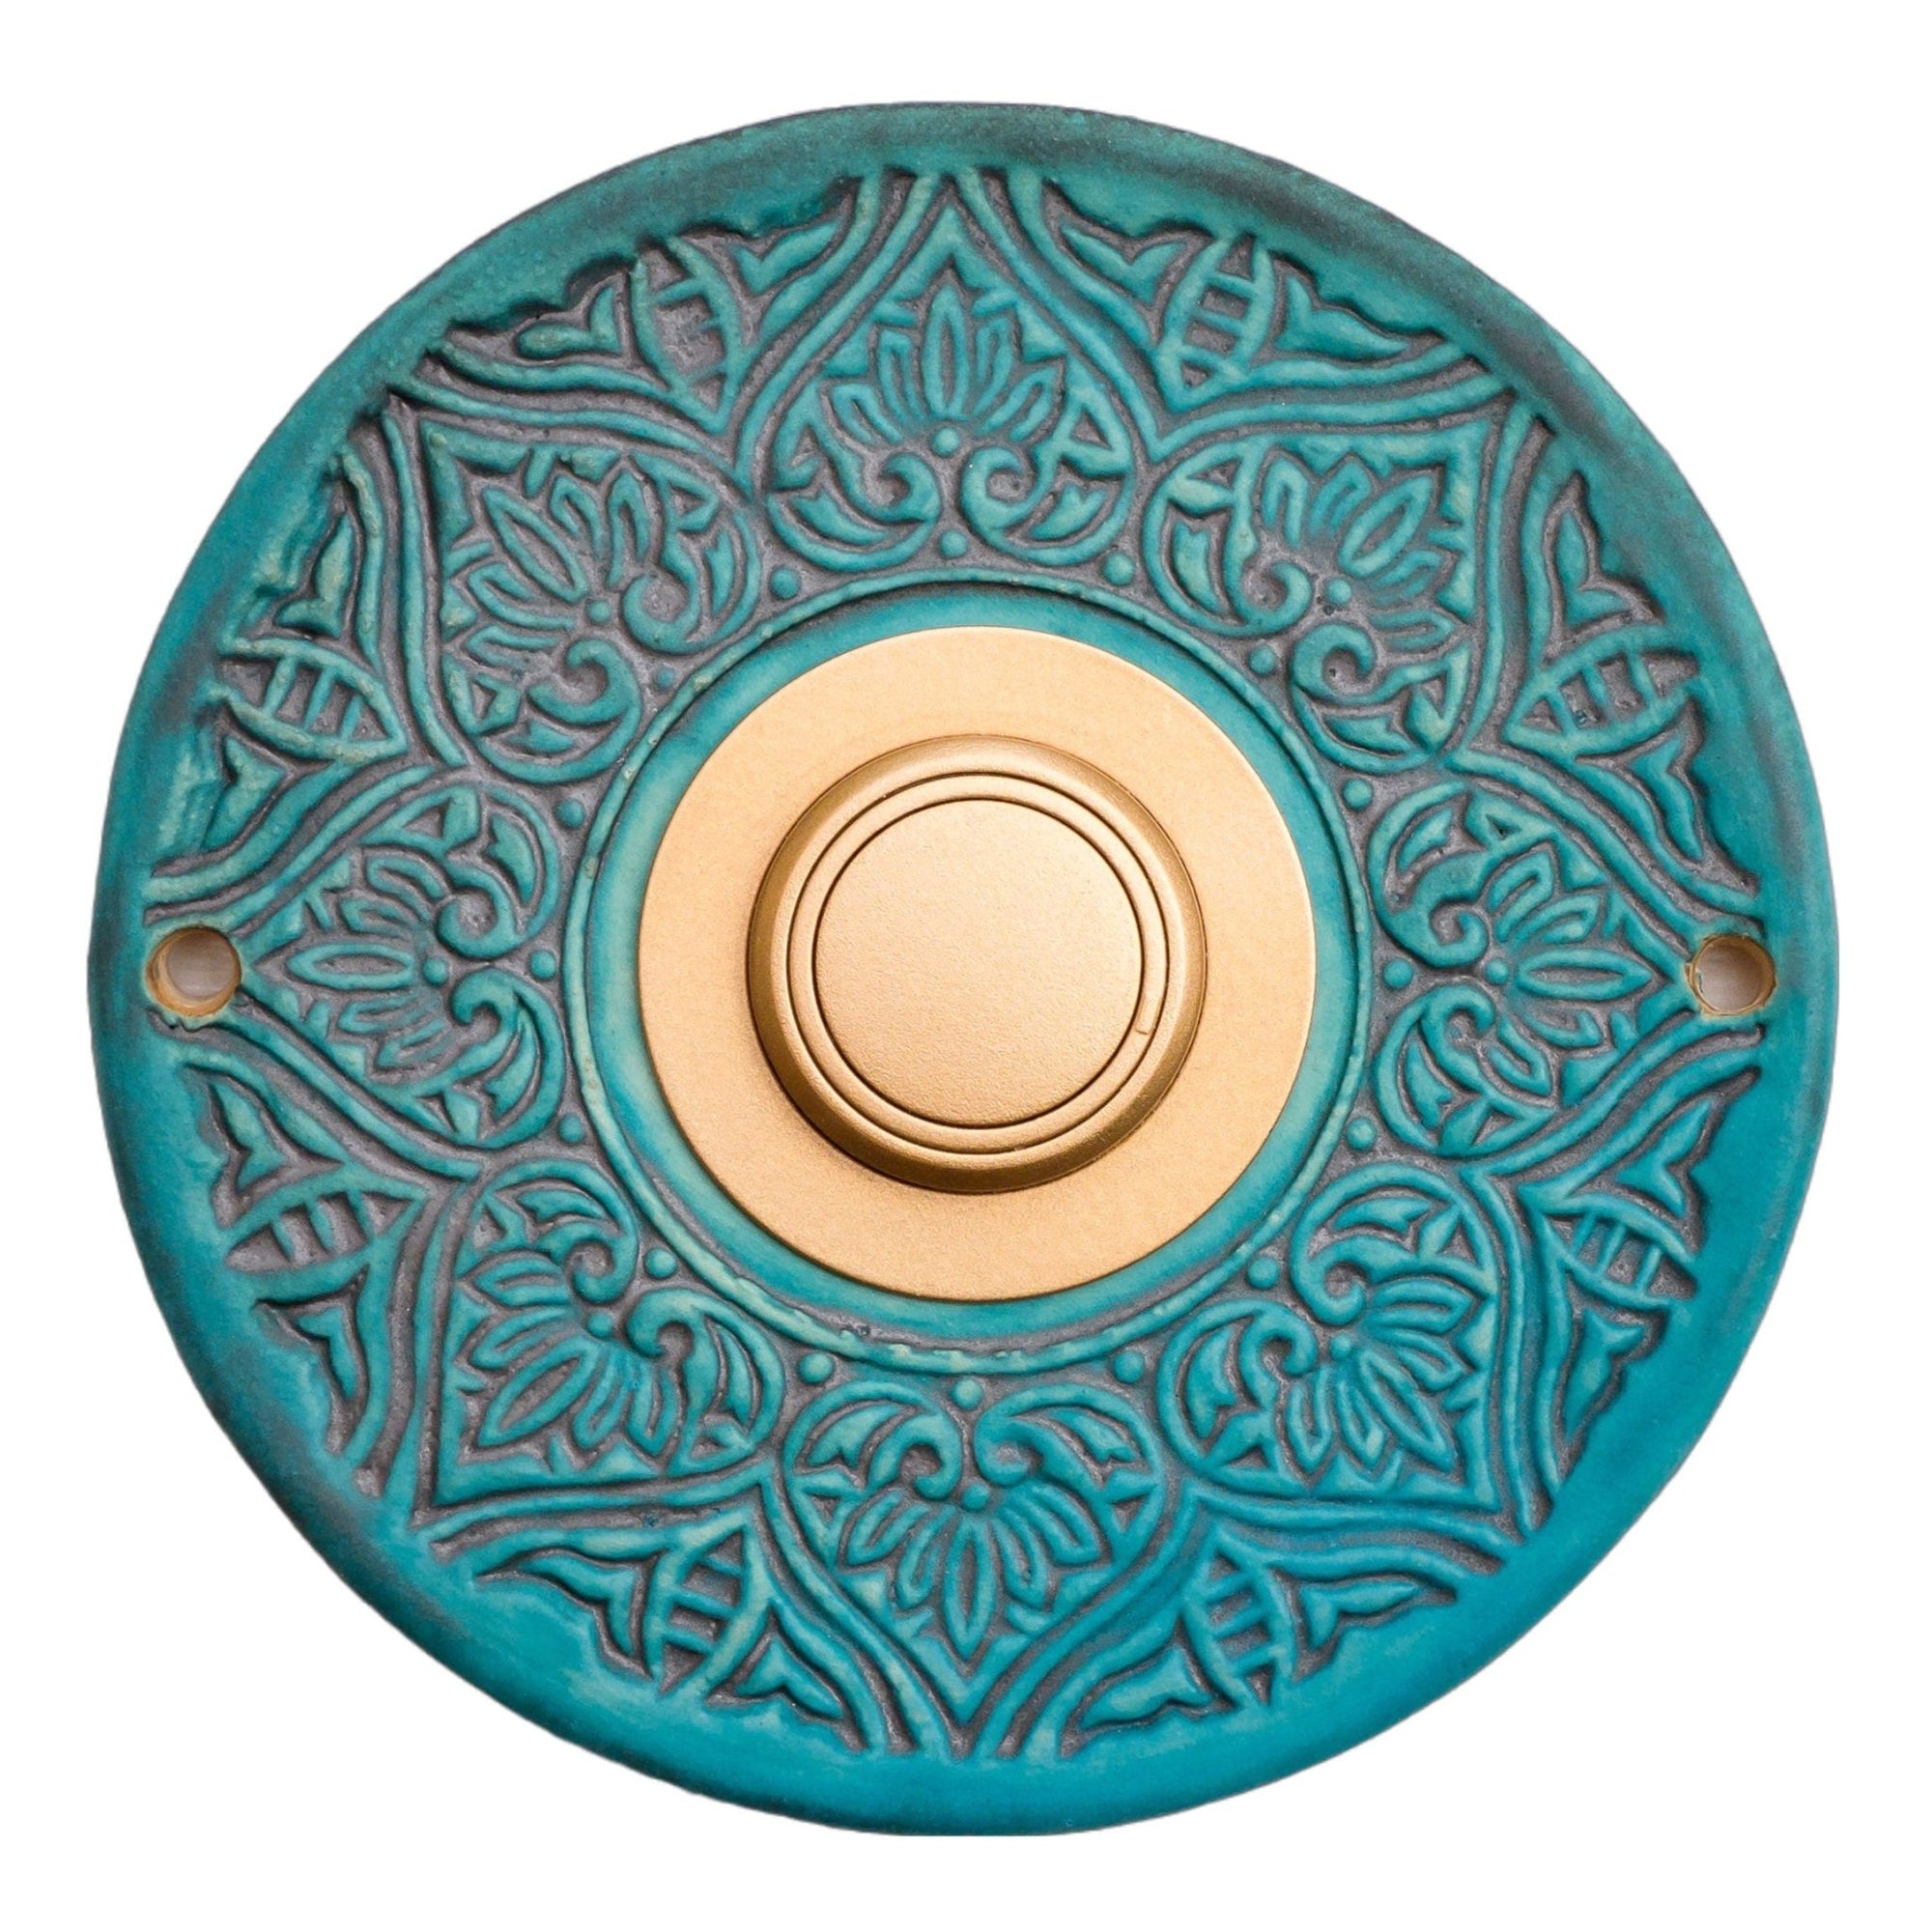 Funkklingelplatte, Funkklingelschild aus Keramik (ca 18cm im Durchmesser)